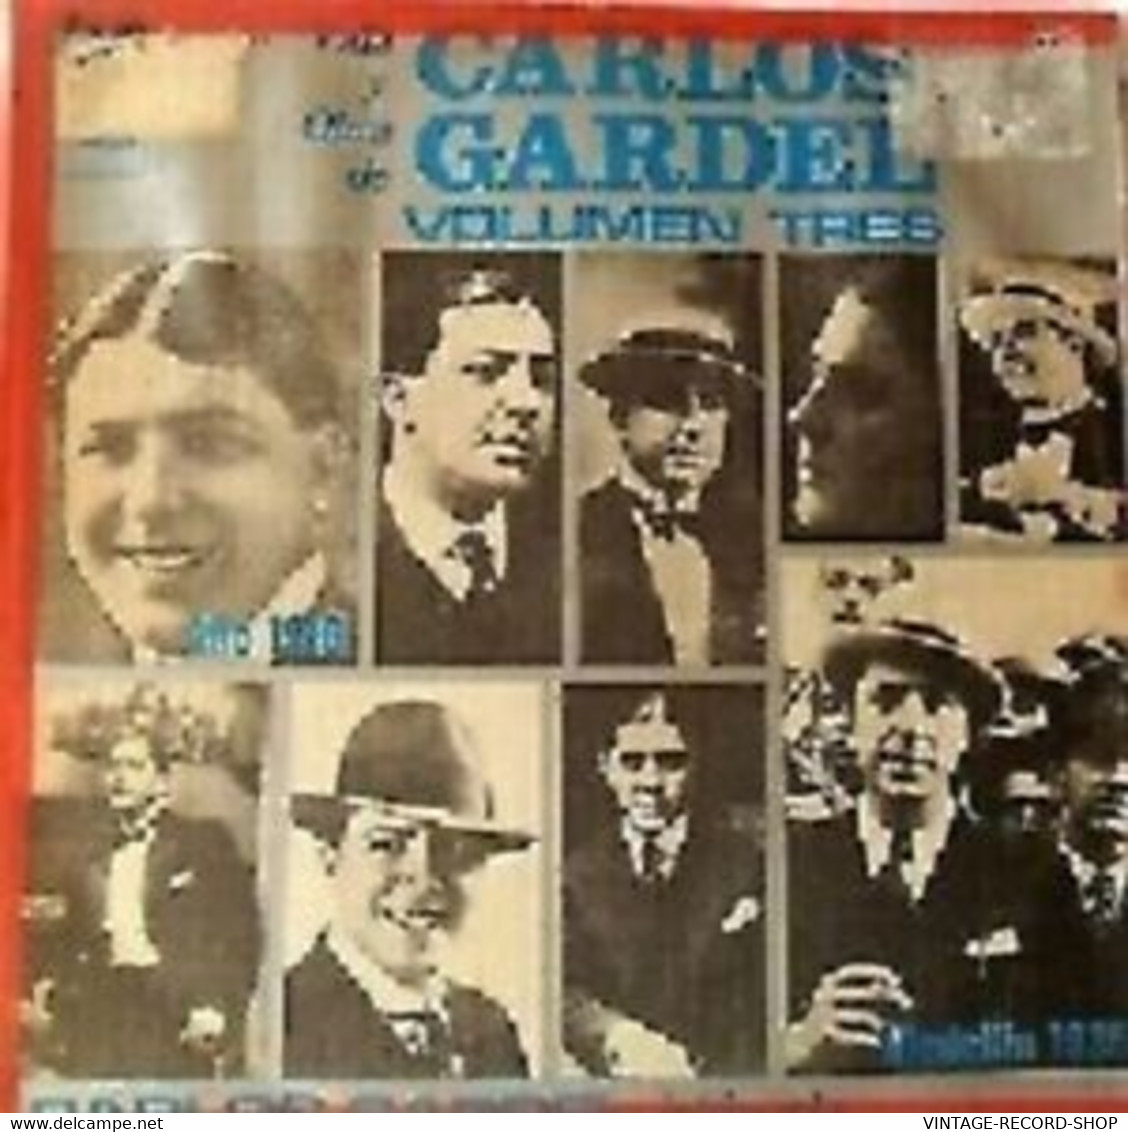 CARLOS GARDEL-VIDA Y OBRA 1918 VG++ RELEASED DATE: 1972 COUNTRY MANUFACTURED- - Muziek DVD's